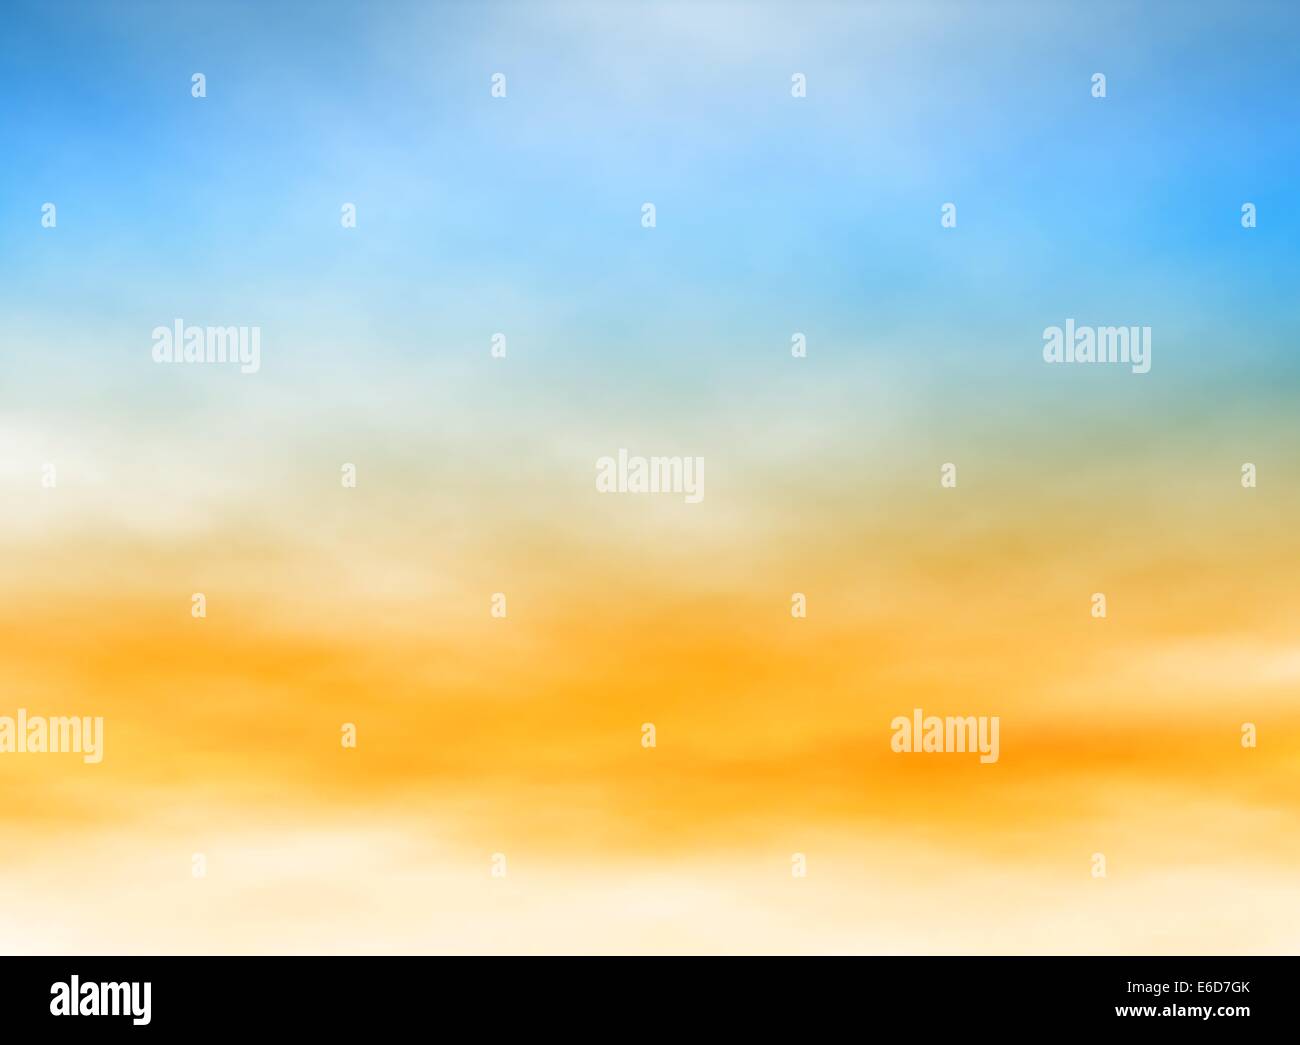 Editierbare Vektor-Illustration von hohen neblige Wolken in einem blauen und orangefarbenen Himmel mit einem Verlaufsgitter gemacht Stock Vektor